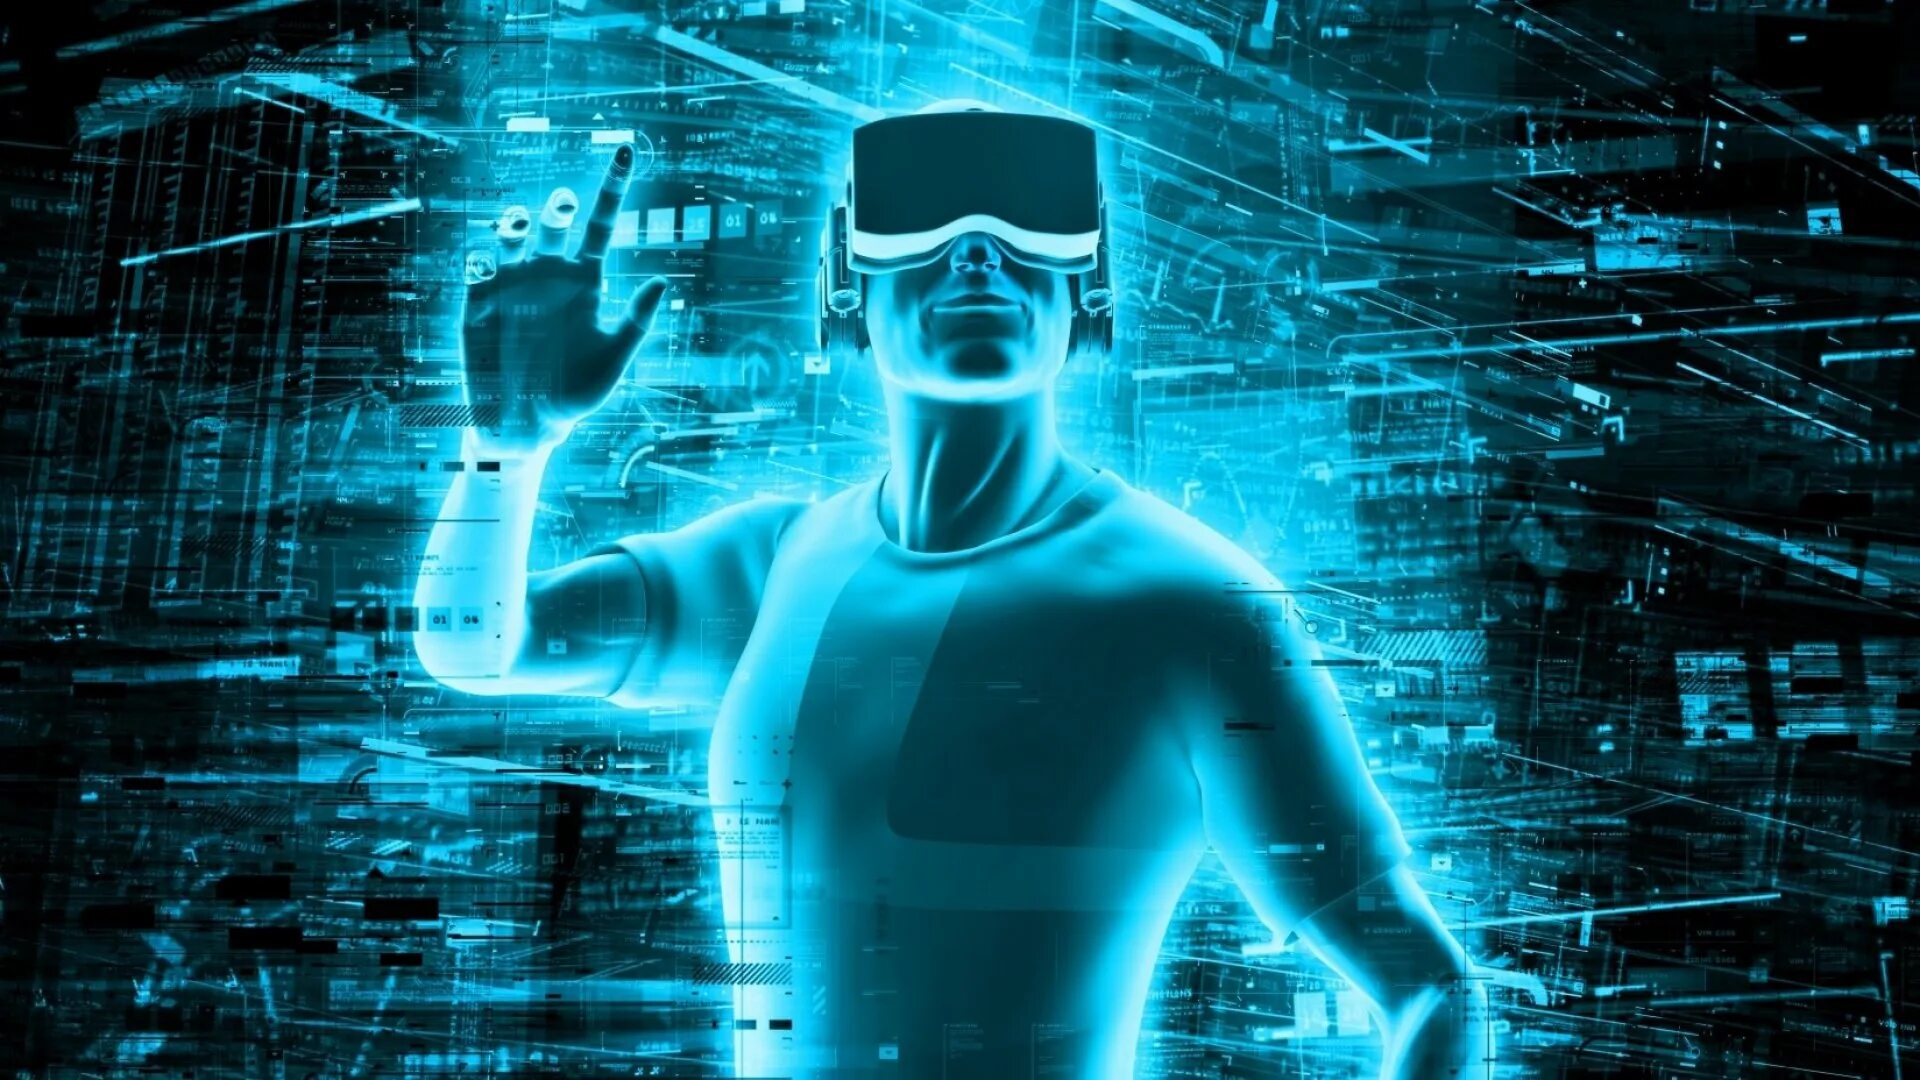 Vr тема. Компьютерные технологии будущего. Технологии виртуальной реальности. Виртуальная реальность картинки. Компьютерные технологии в будущем.